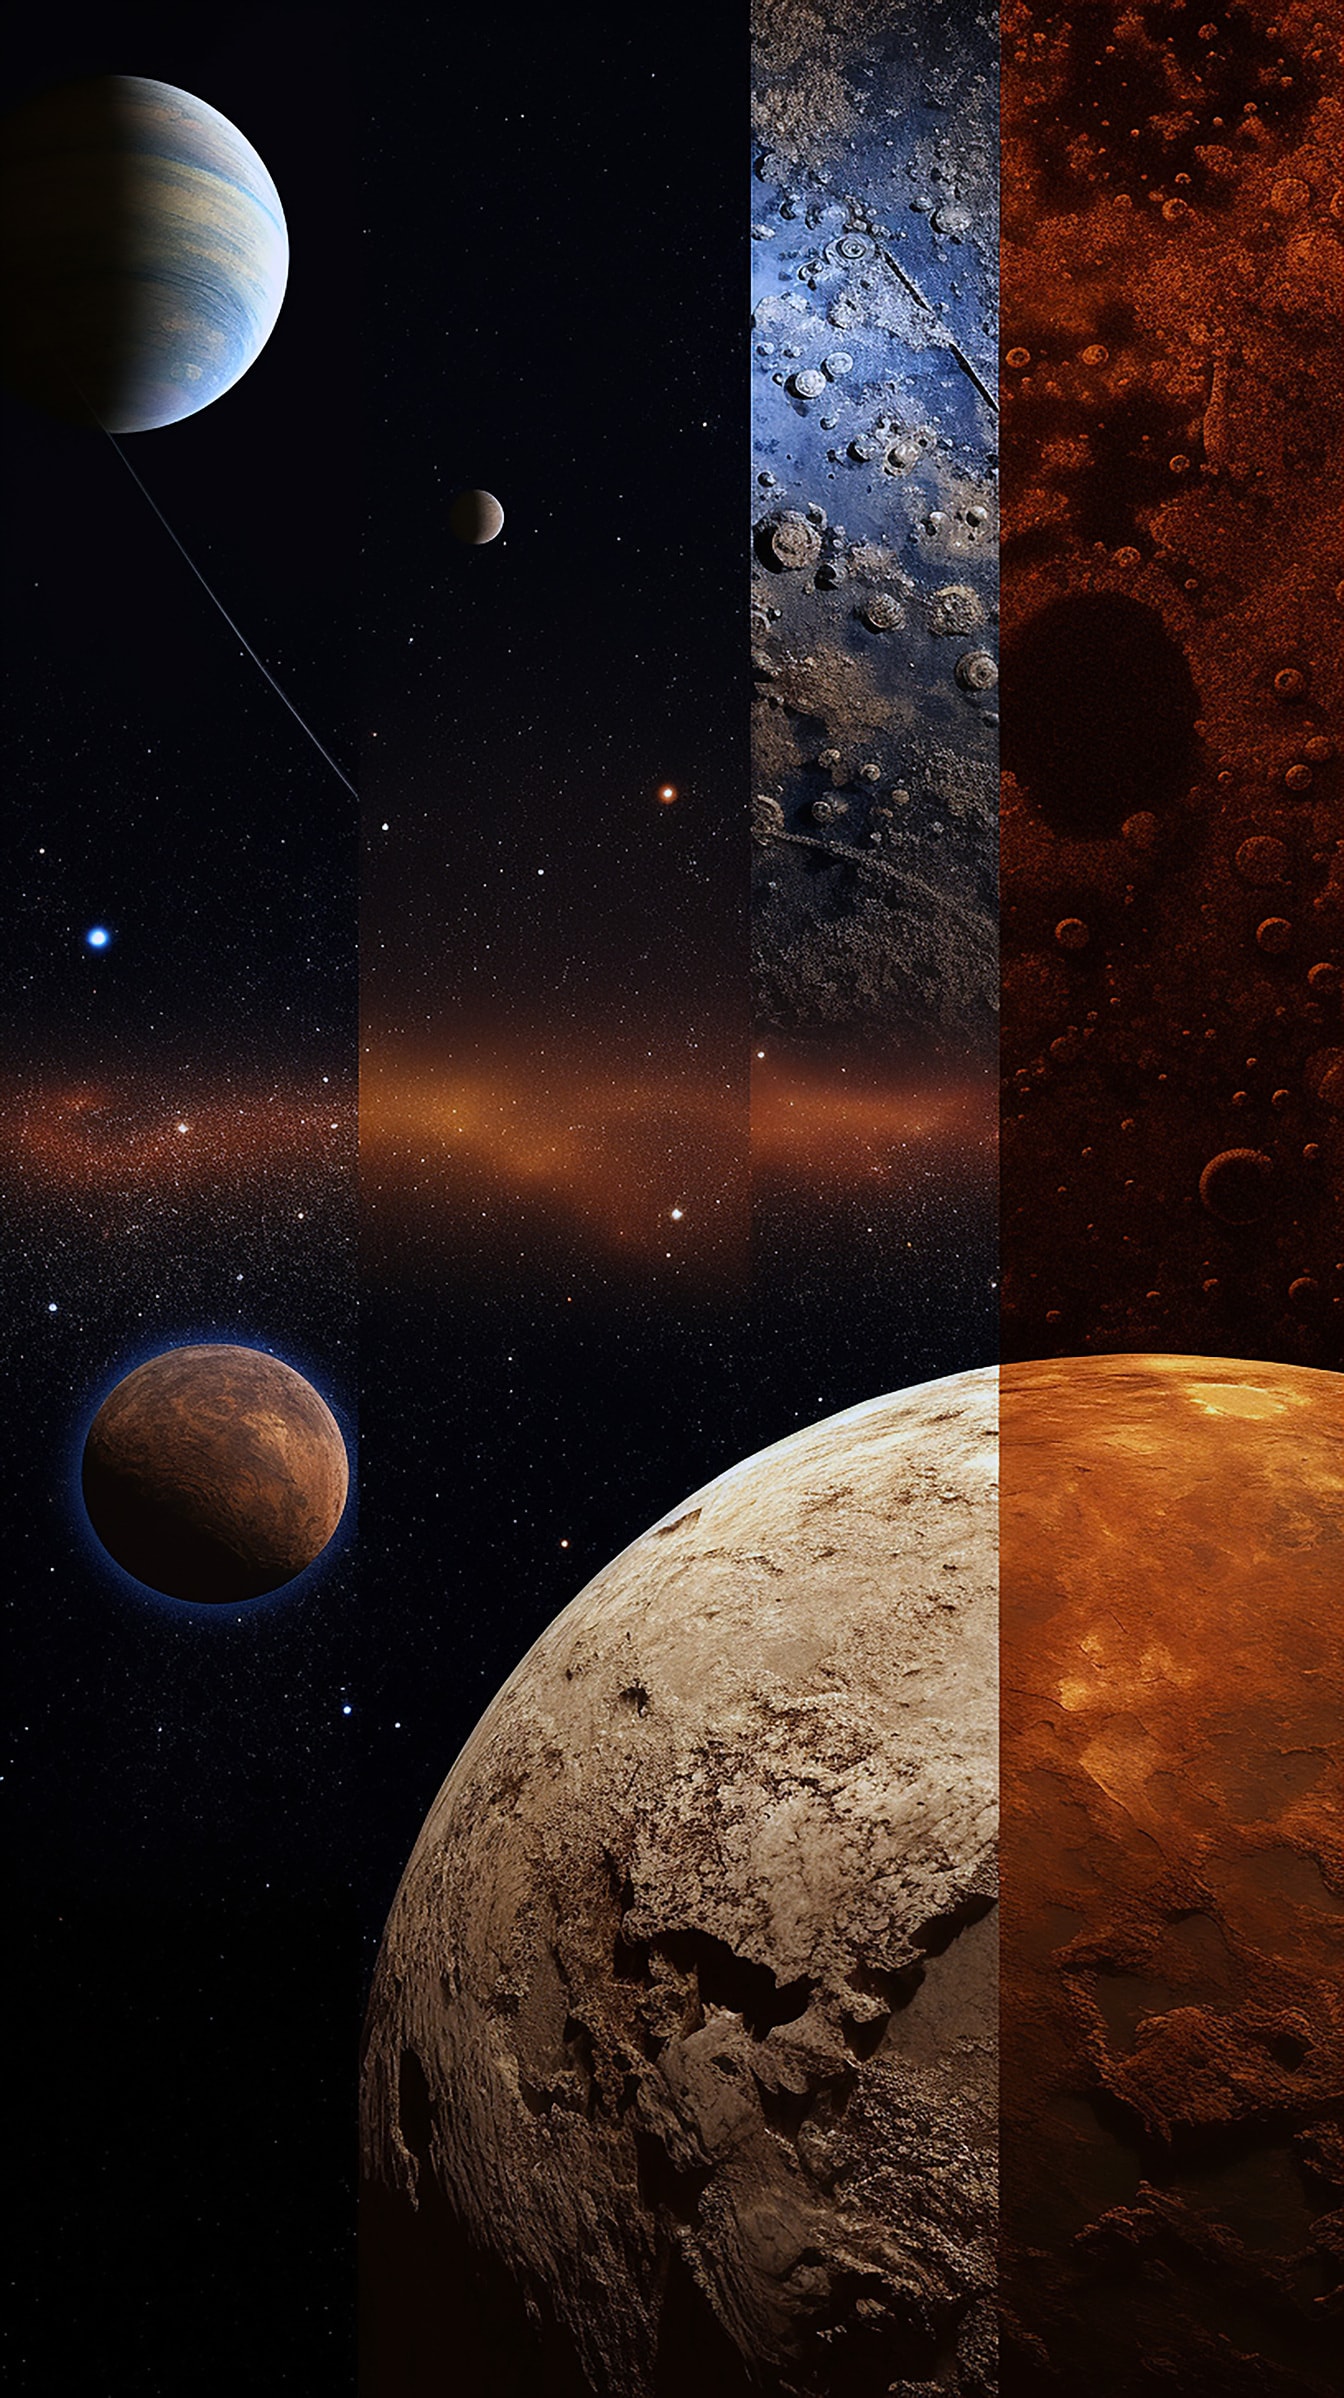 Photomontage kolase warna-warni alam semesta astronomi phtoos